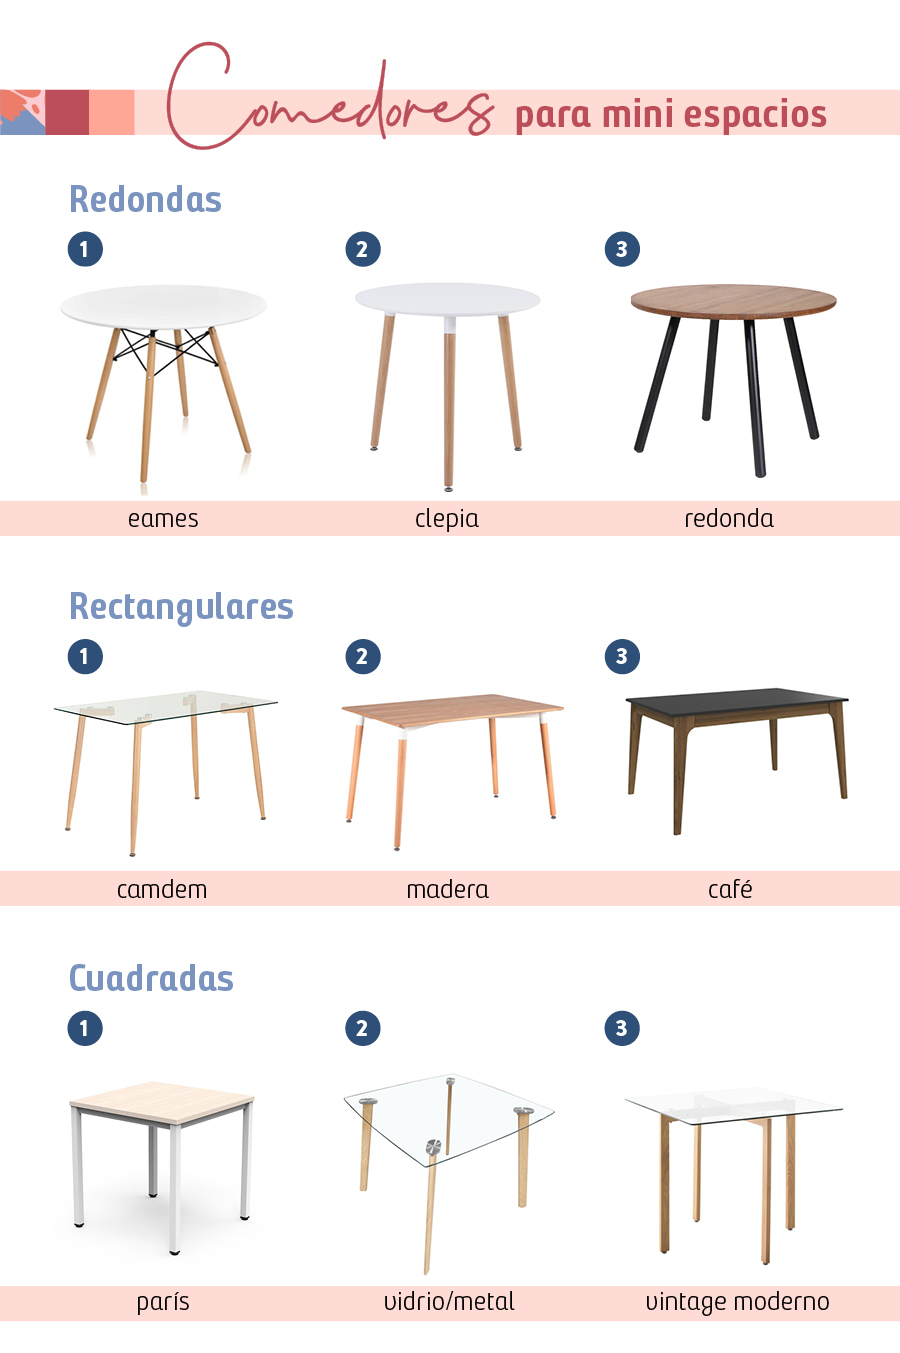 Collage de 9 mesas de Sodimac para comedores pequeños divididas según su forma: redondas, rectangulares y cuadradas.